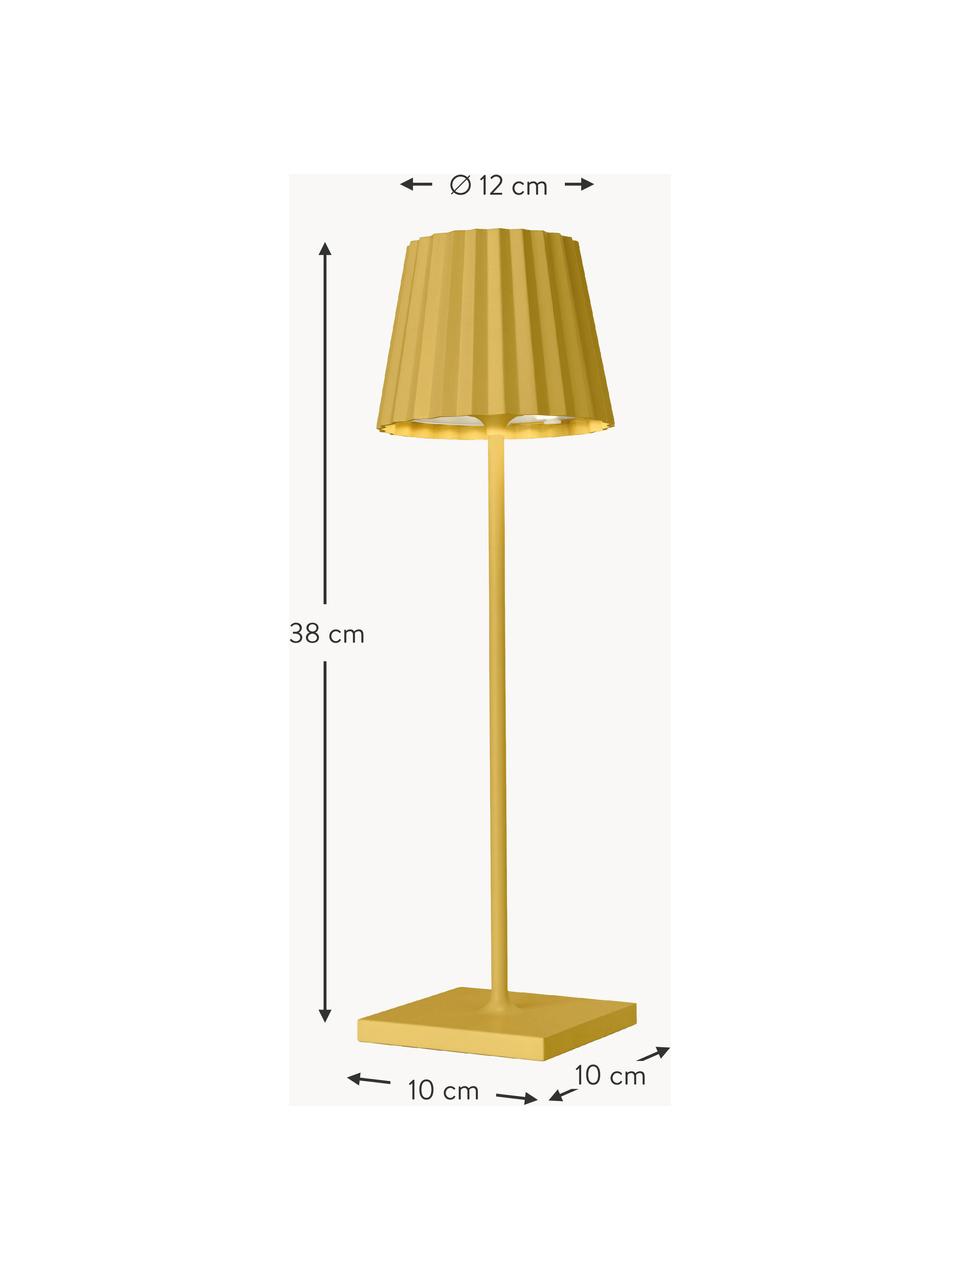 Mobile dimmbare LED-Außentischlampe Trellia in Gelb, Lampenschirm: Aluminium, beschichtet, Lampenfuß: Aluminium, beschichtet, Gelb, Ø 12 x H 38 cm